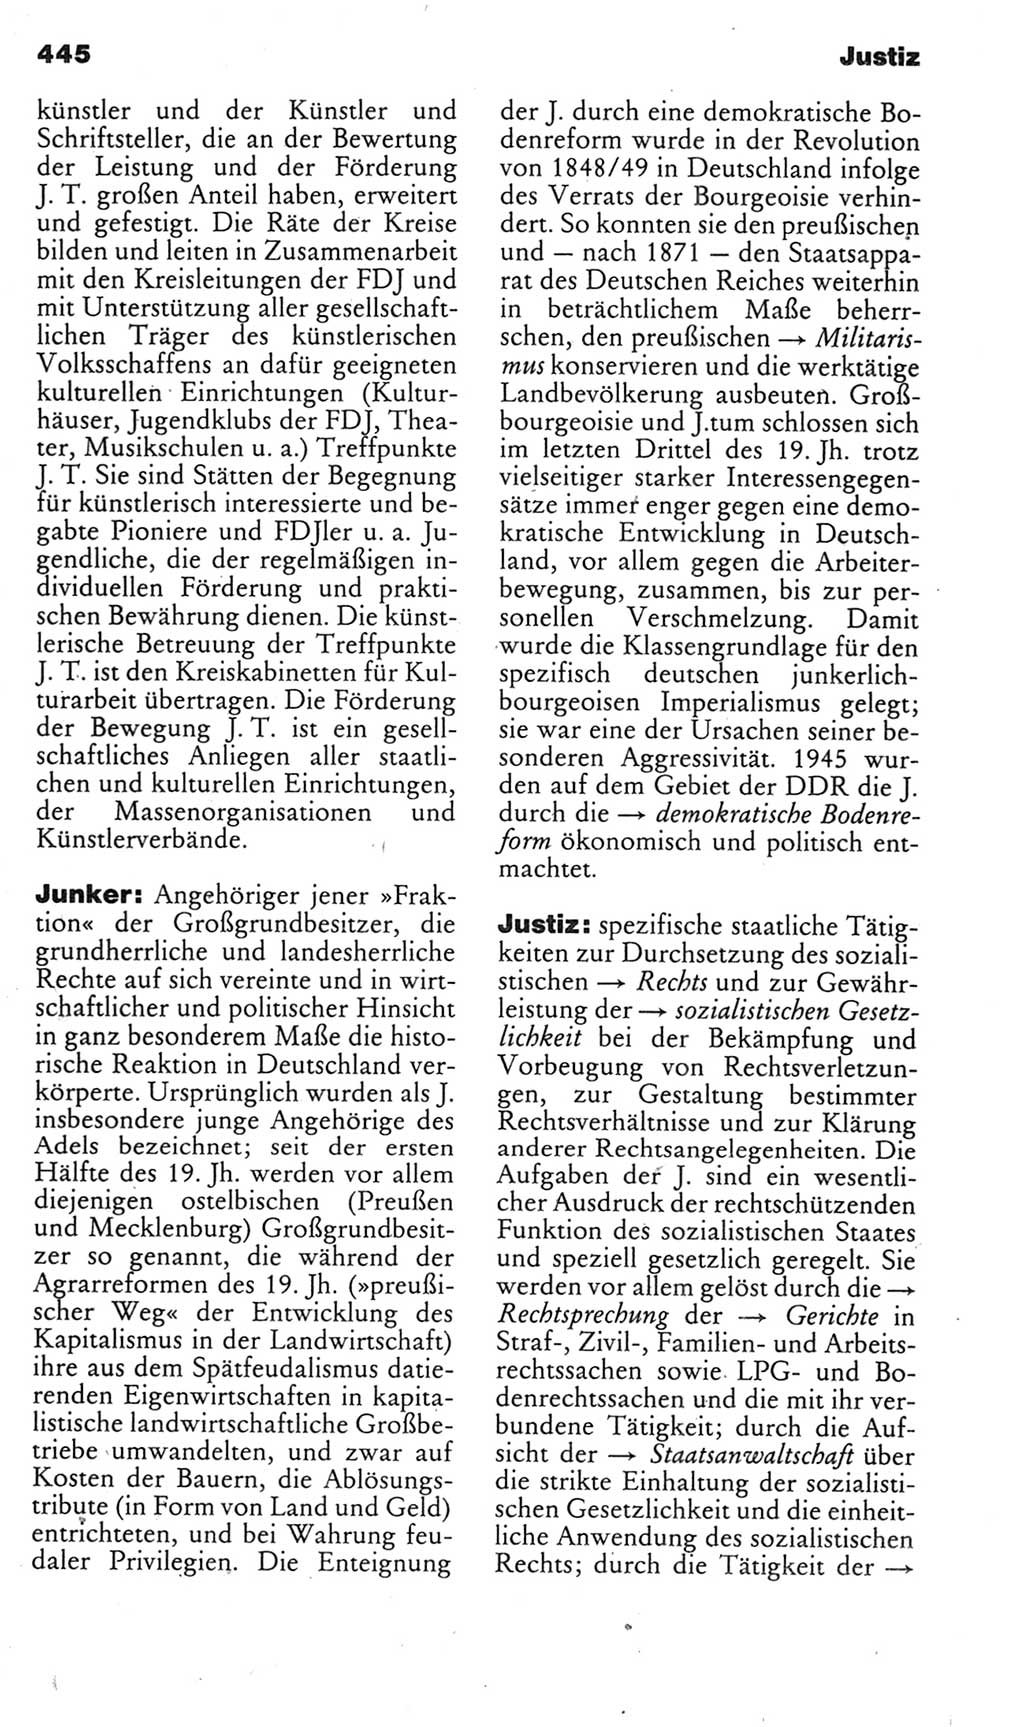 Kleines politisches Wörterbuch [Deutsche Demokratische Republik (DDR)] 1985, Seite 445 (Kl. pol. Wb. DDR 1985, S. 445)